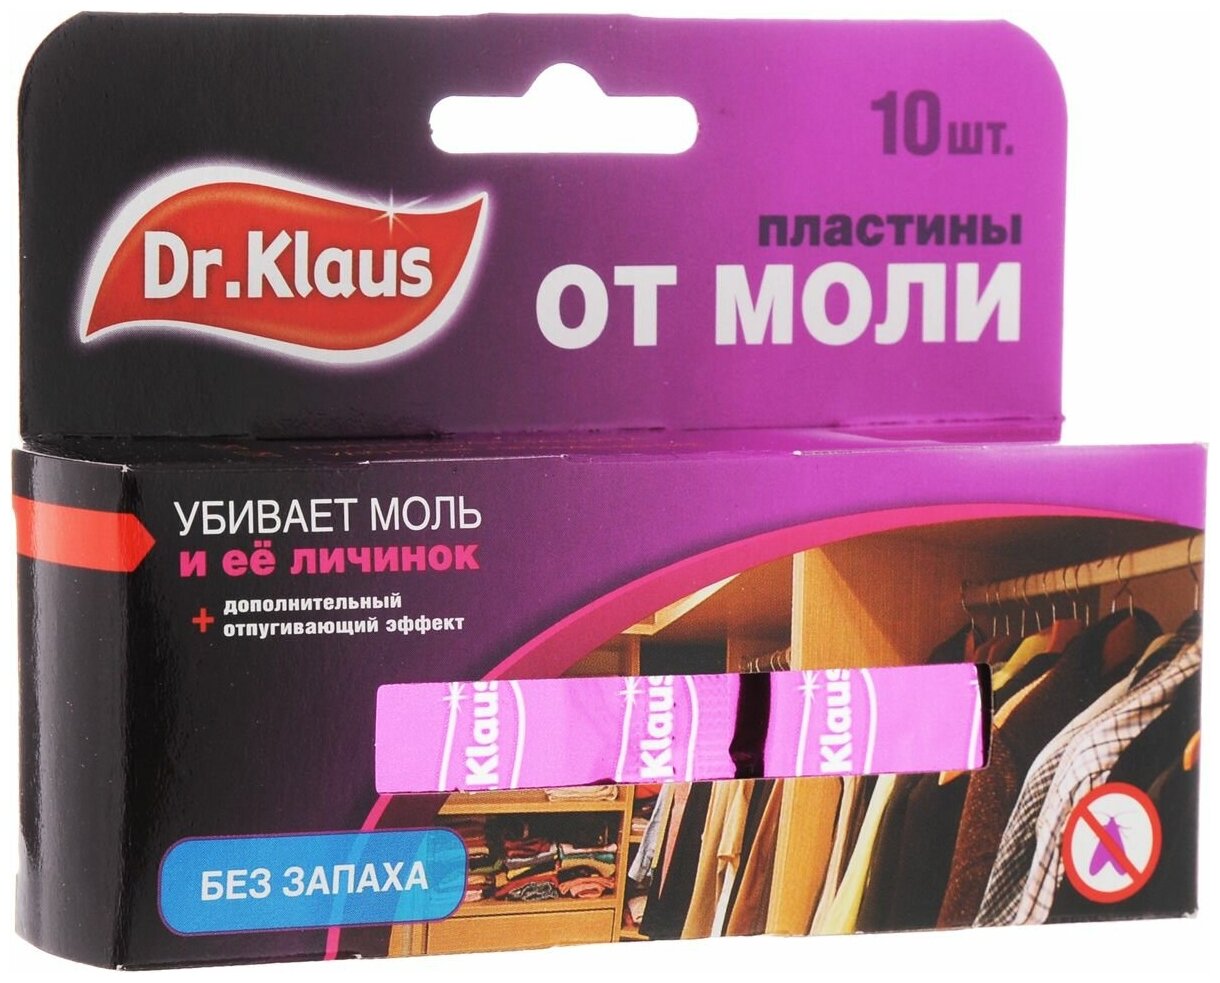 Пластины от моли "Dr.Klaus", без запаха, набор, 10 шт 692566